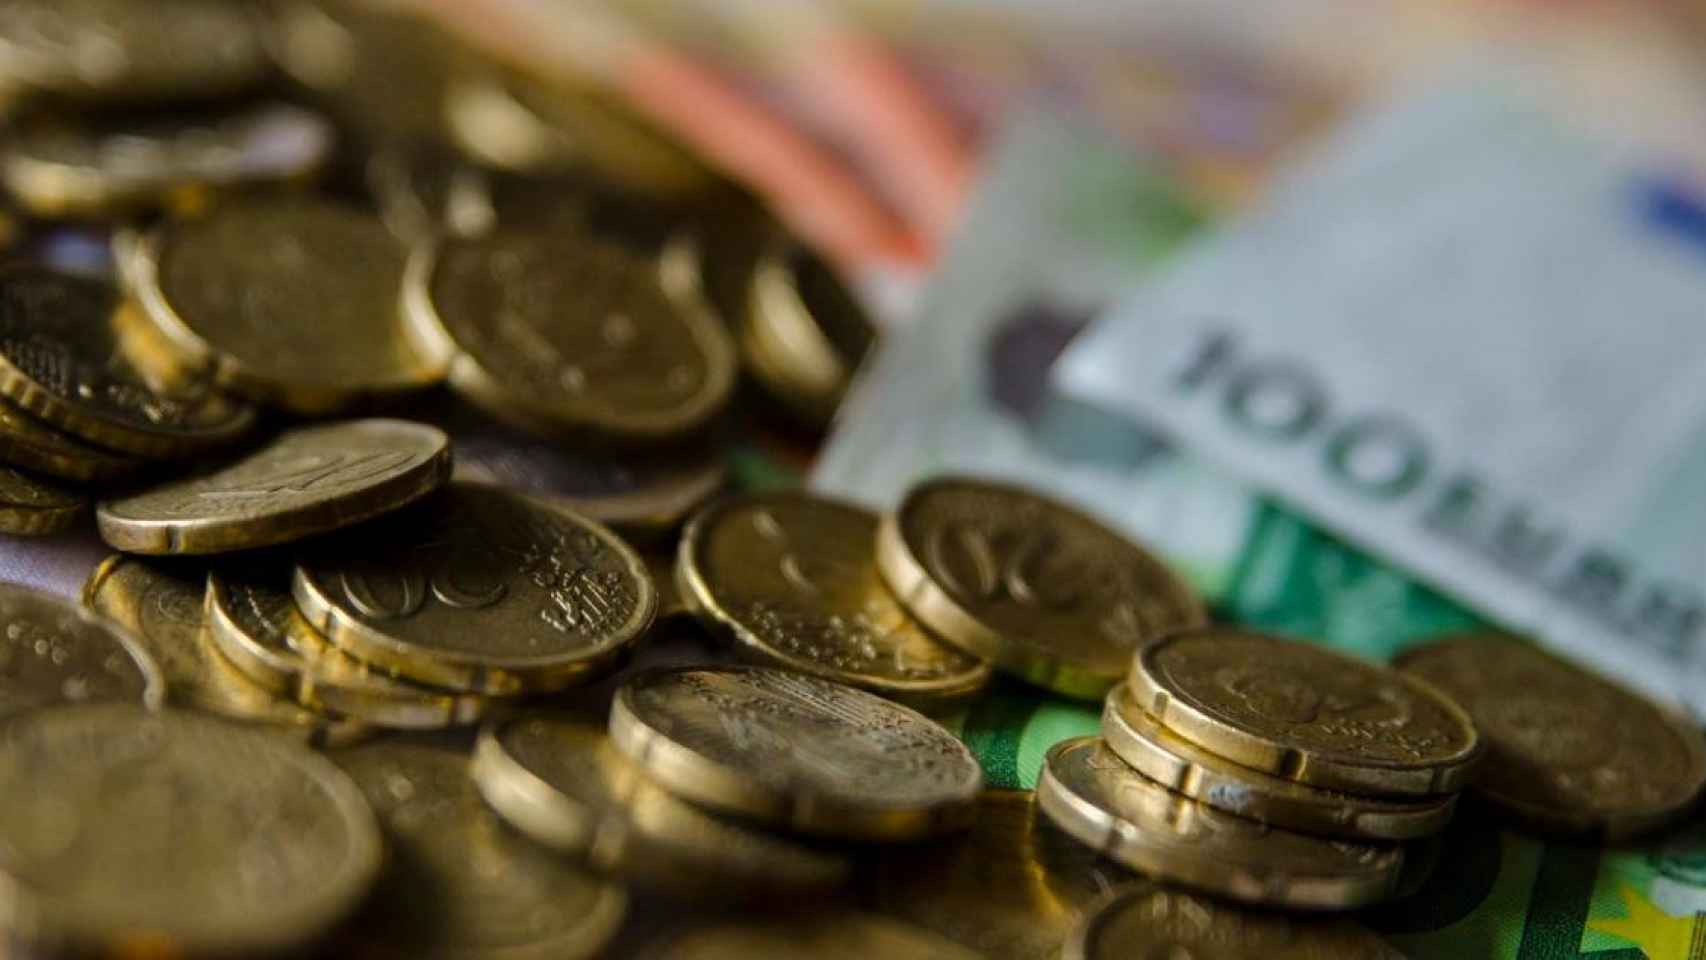 Monedas y billetes: dinero en efectivo / EUROPA PRESS